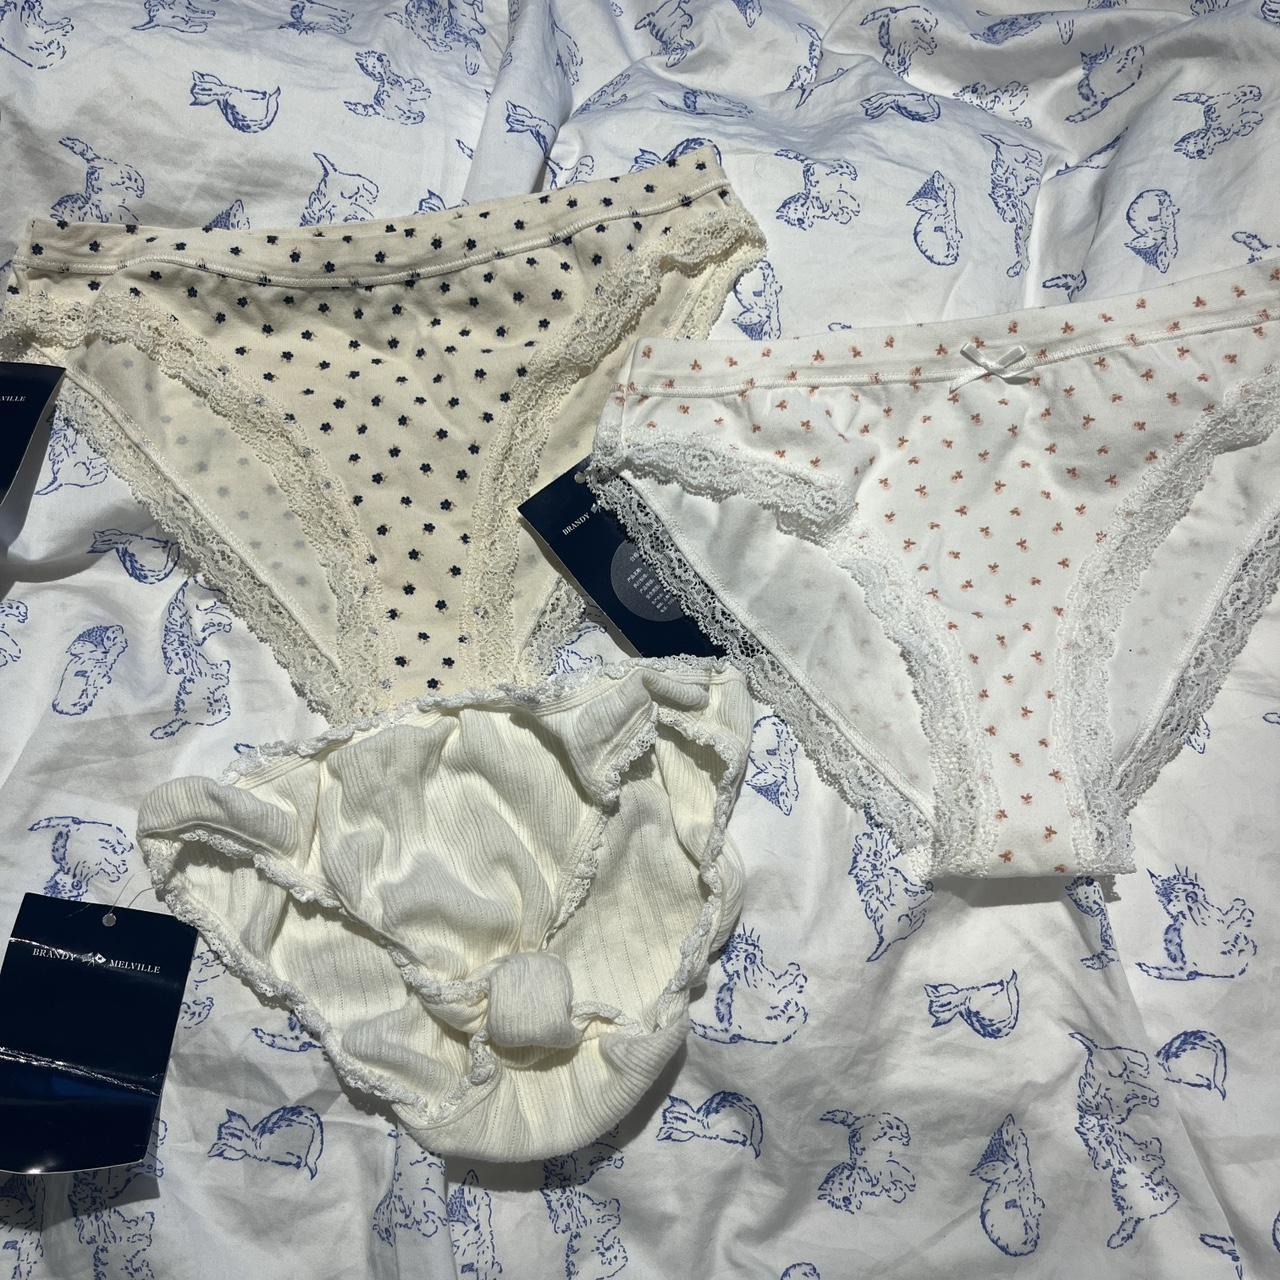 Brandy melville underwear collection £9 per item,... - Depop